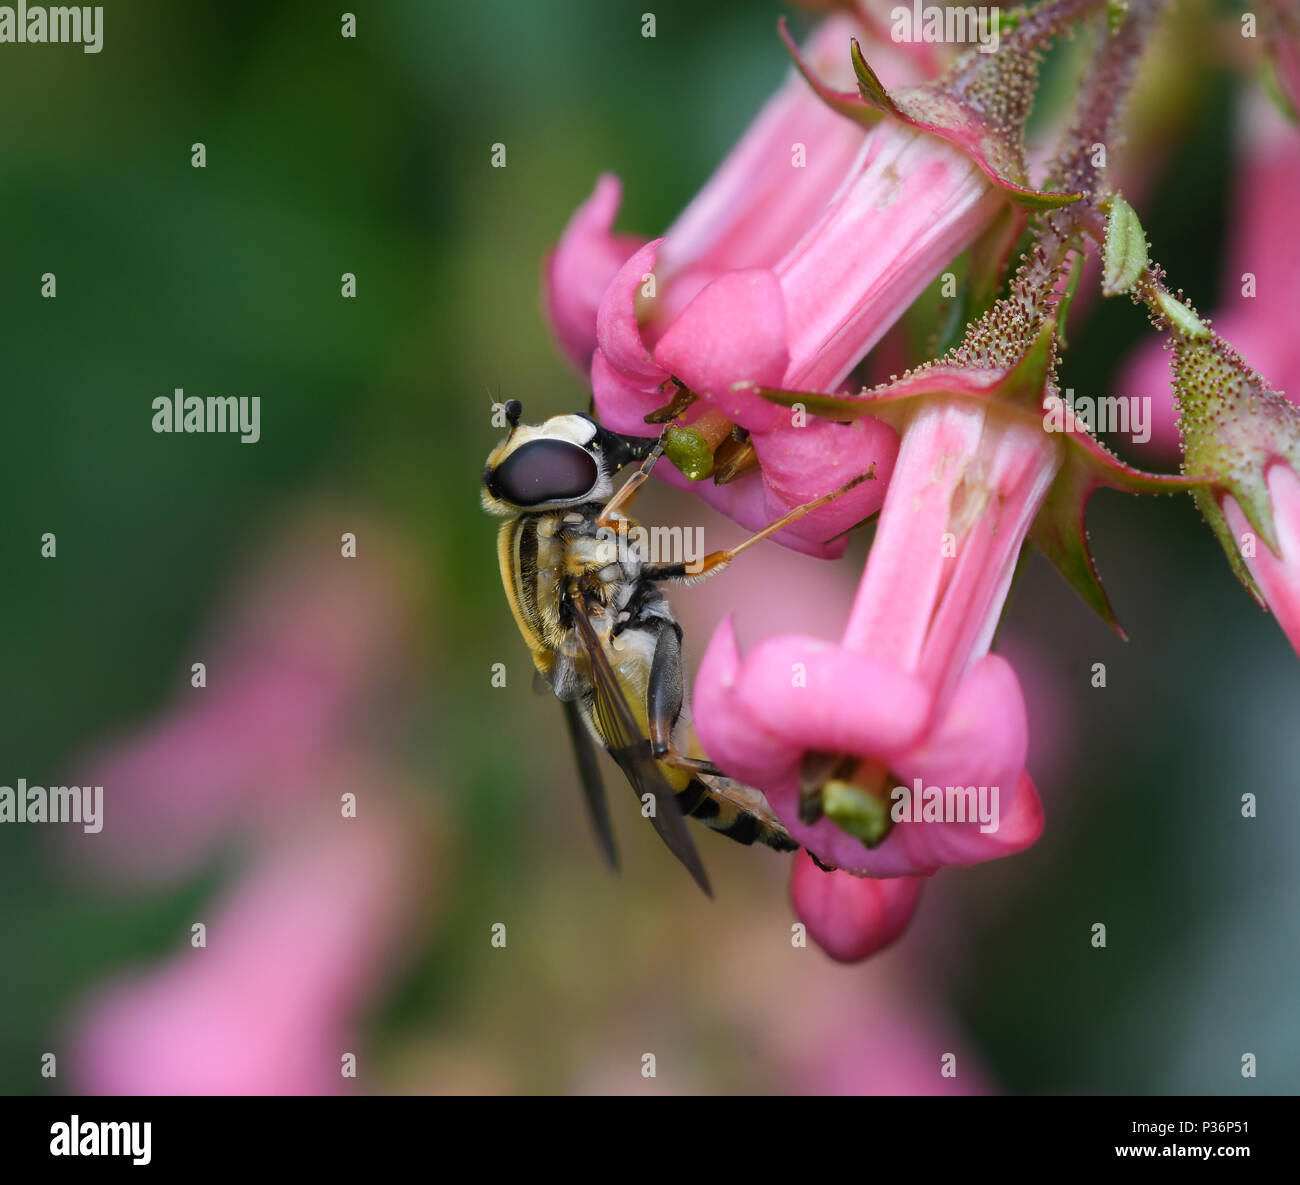 Ejemplar del sírfido Helophilus pendulus alimentándose del néctar de las flores de Escallonia rubra. Stock Photo